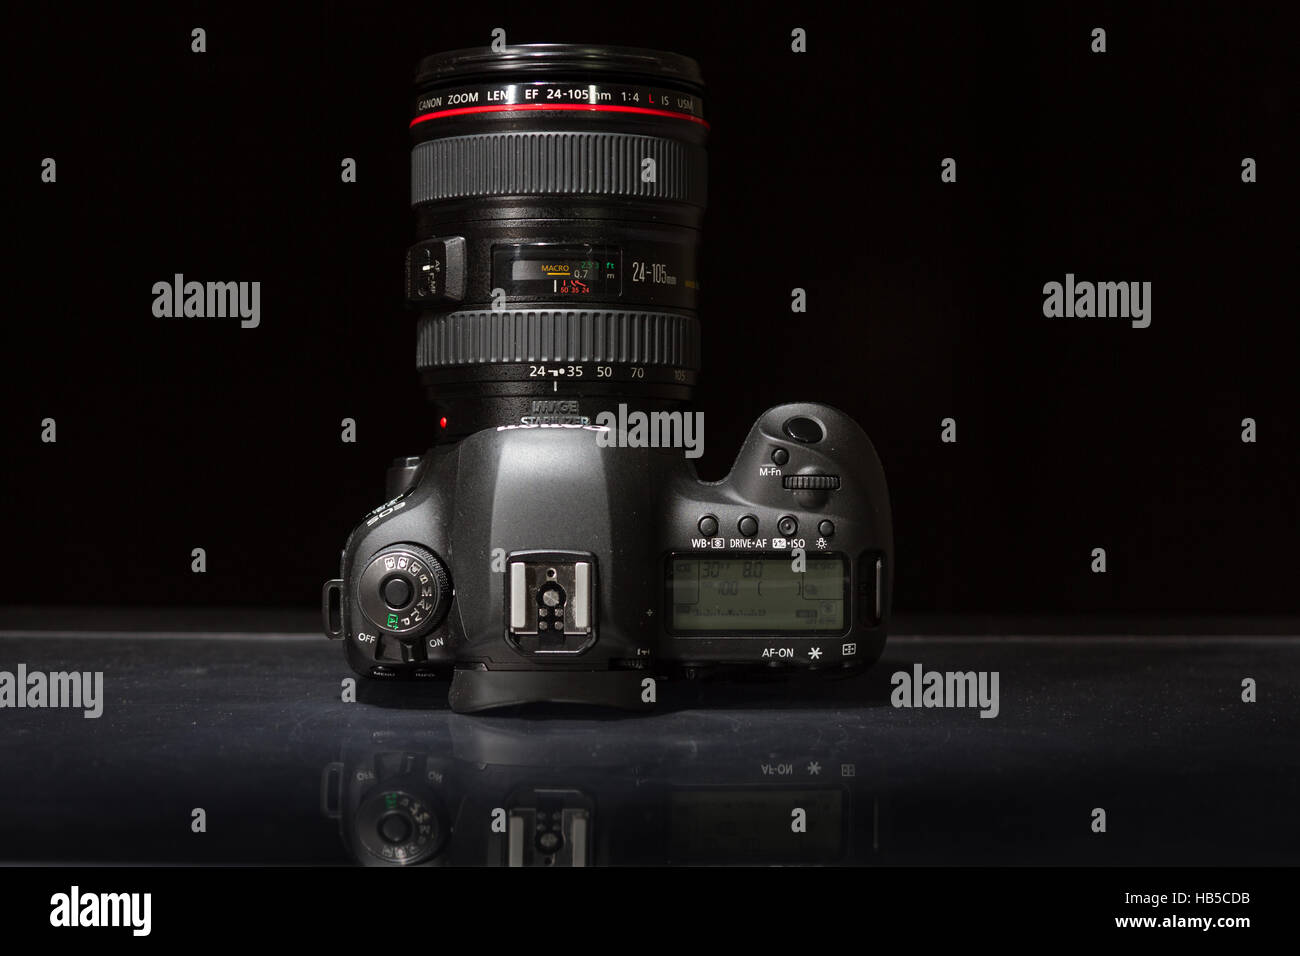 Canon 5D Mark IV-Kamera mit Canon EF 70-200mm f/2,8 L II USM Objektiv auf einem dunklen Hintergrund Stockfoto